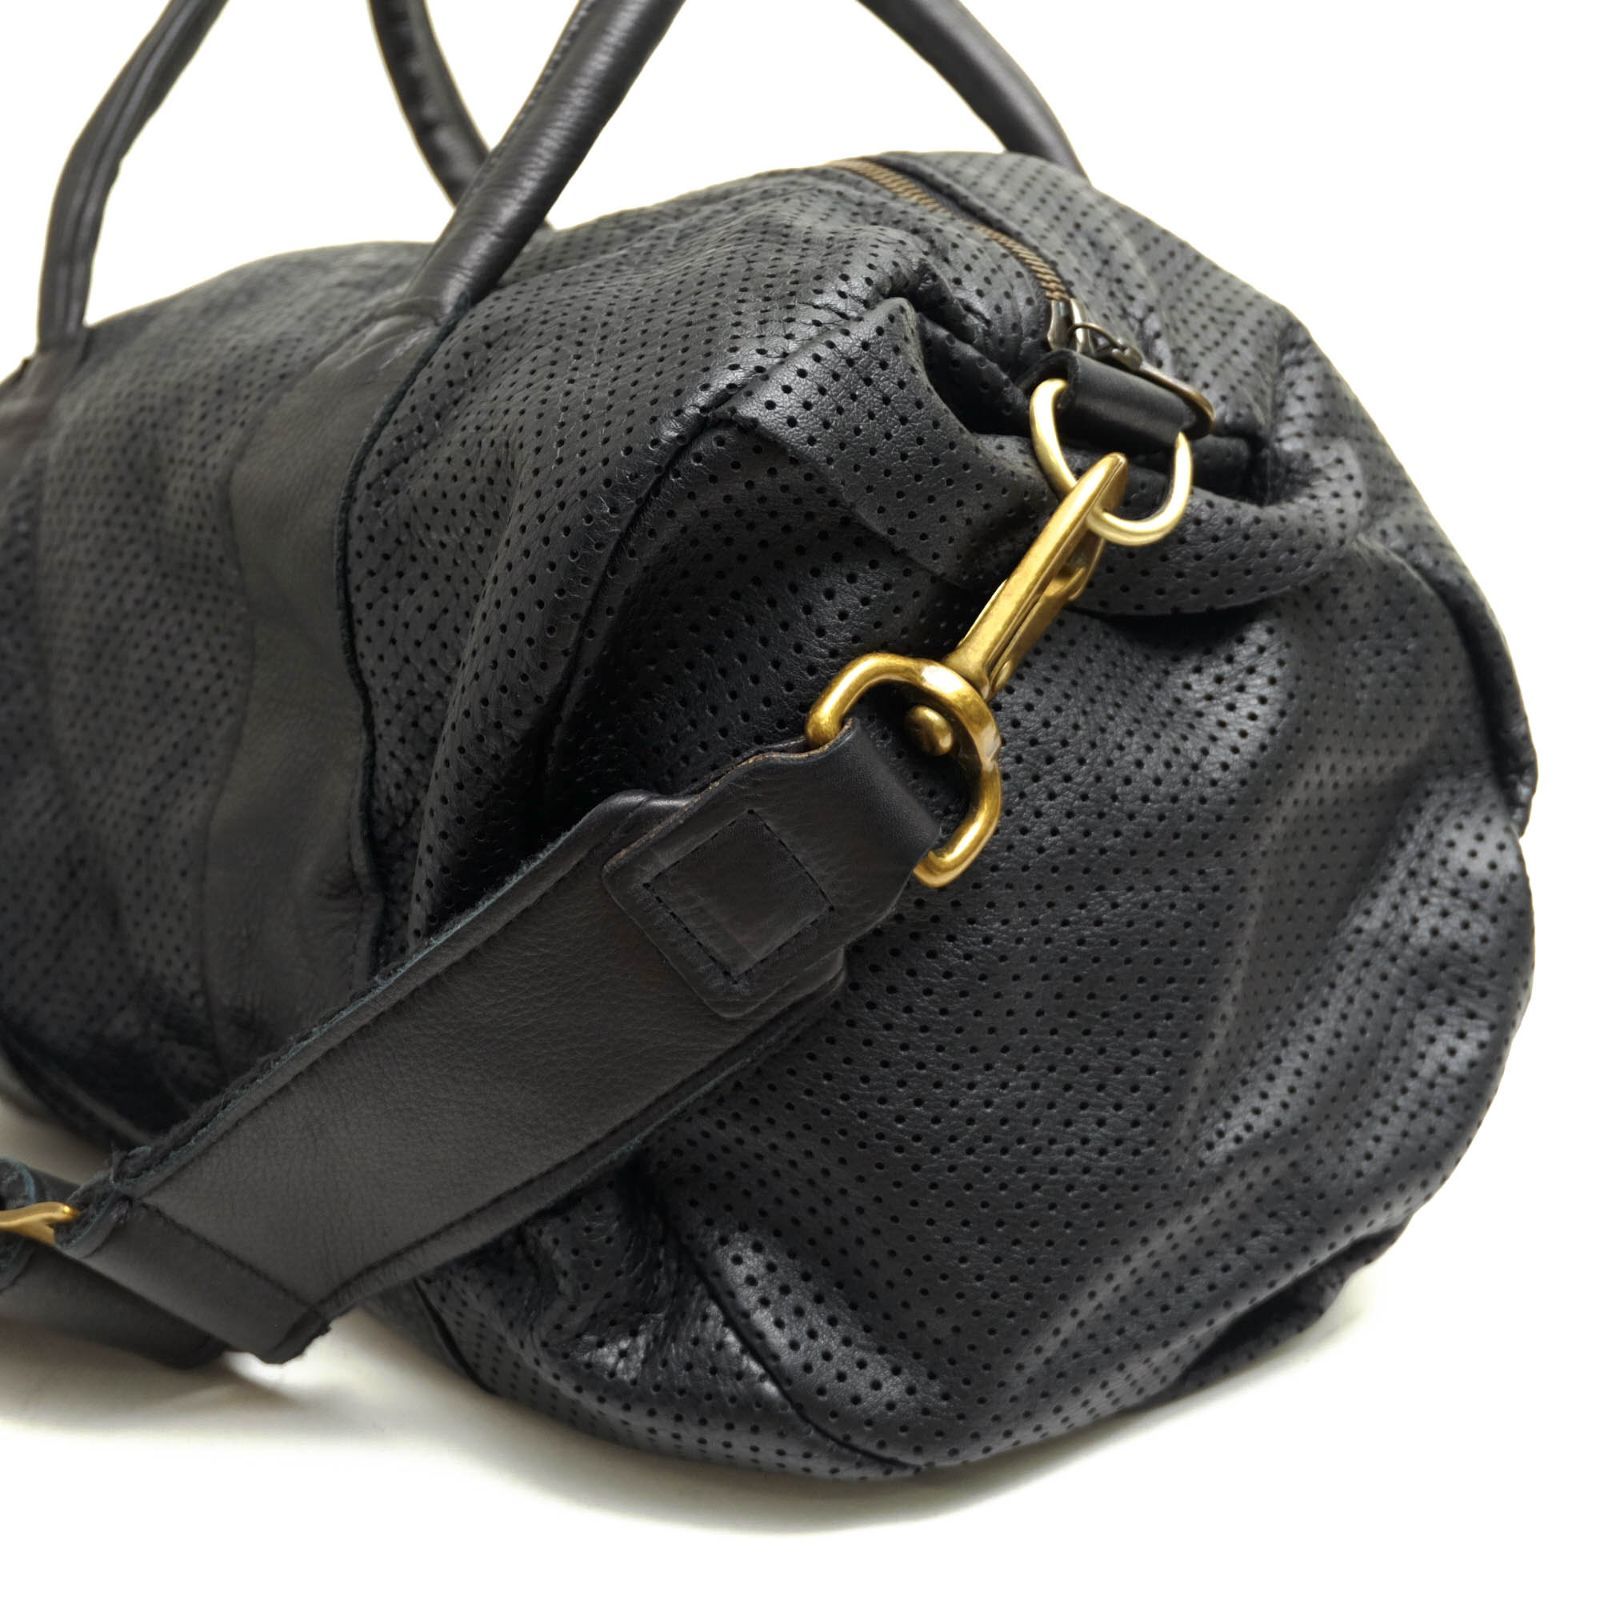 ジャスエムビー／Jas-M.B. バッグ ボストンバッグ 鞄 旅行鞄 メンズ 男性 男性用レザー 革 本革 ブラック 黒  SQUARE BARREL 2WAY ショルダーバッグ ヴィンテージ加工